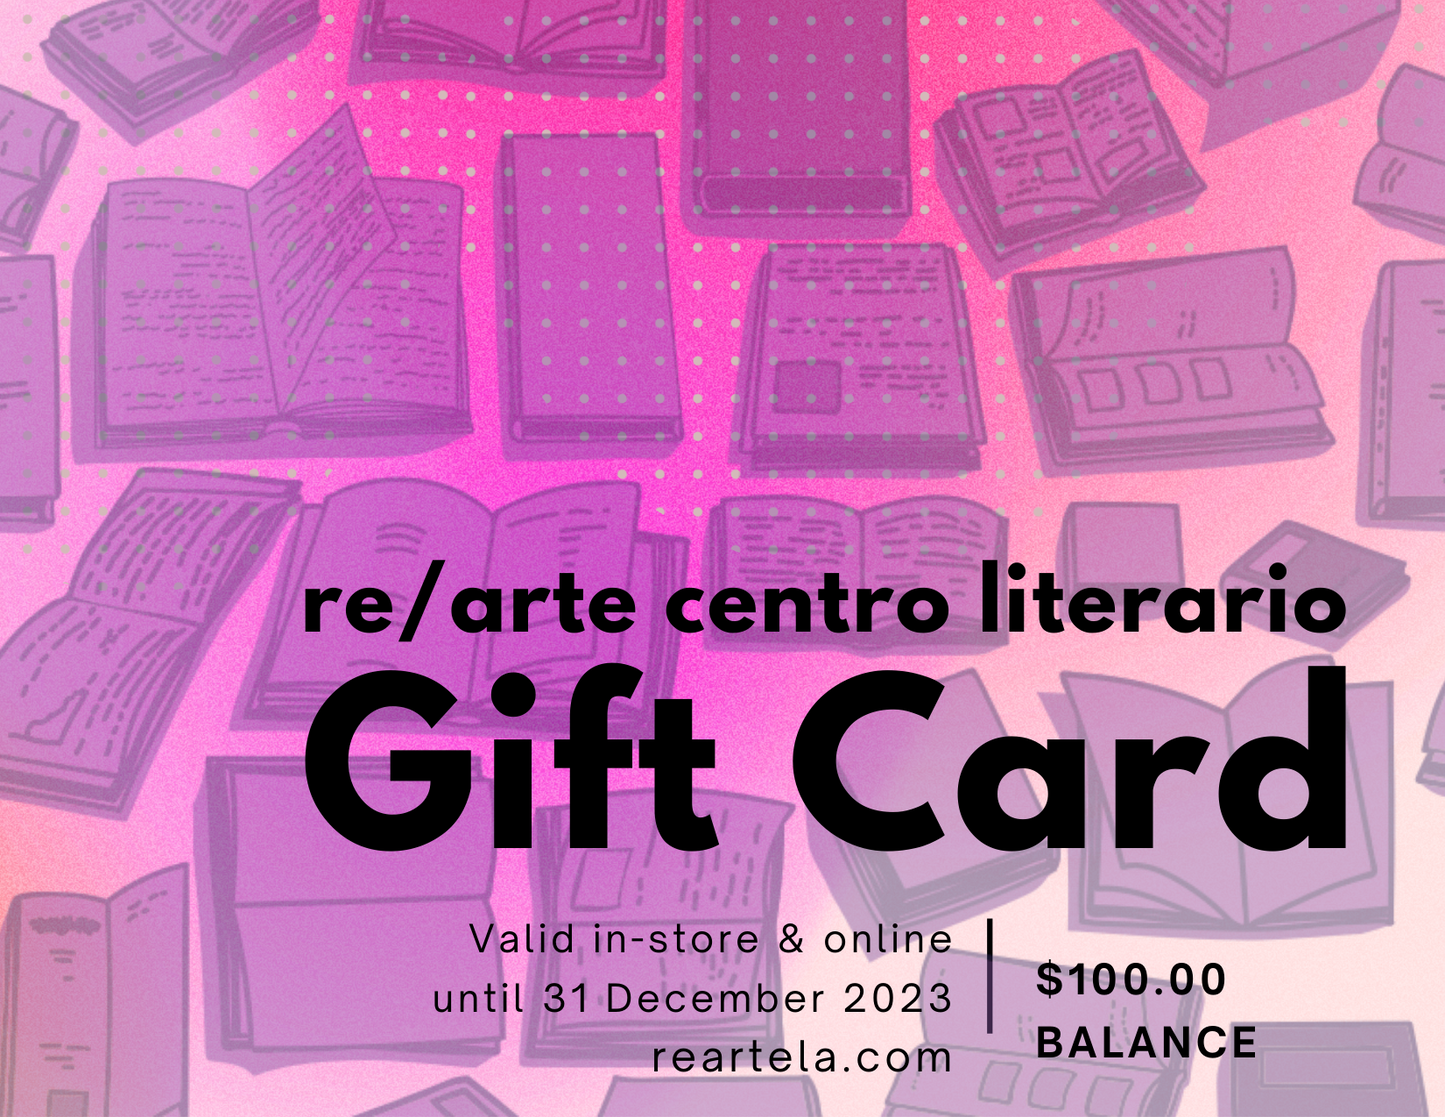 re/arte centro literario Gift Card